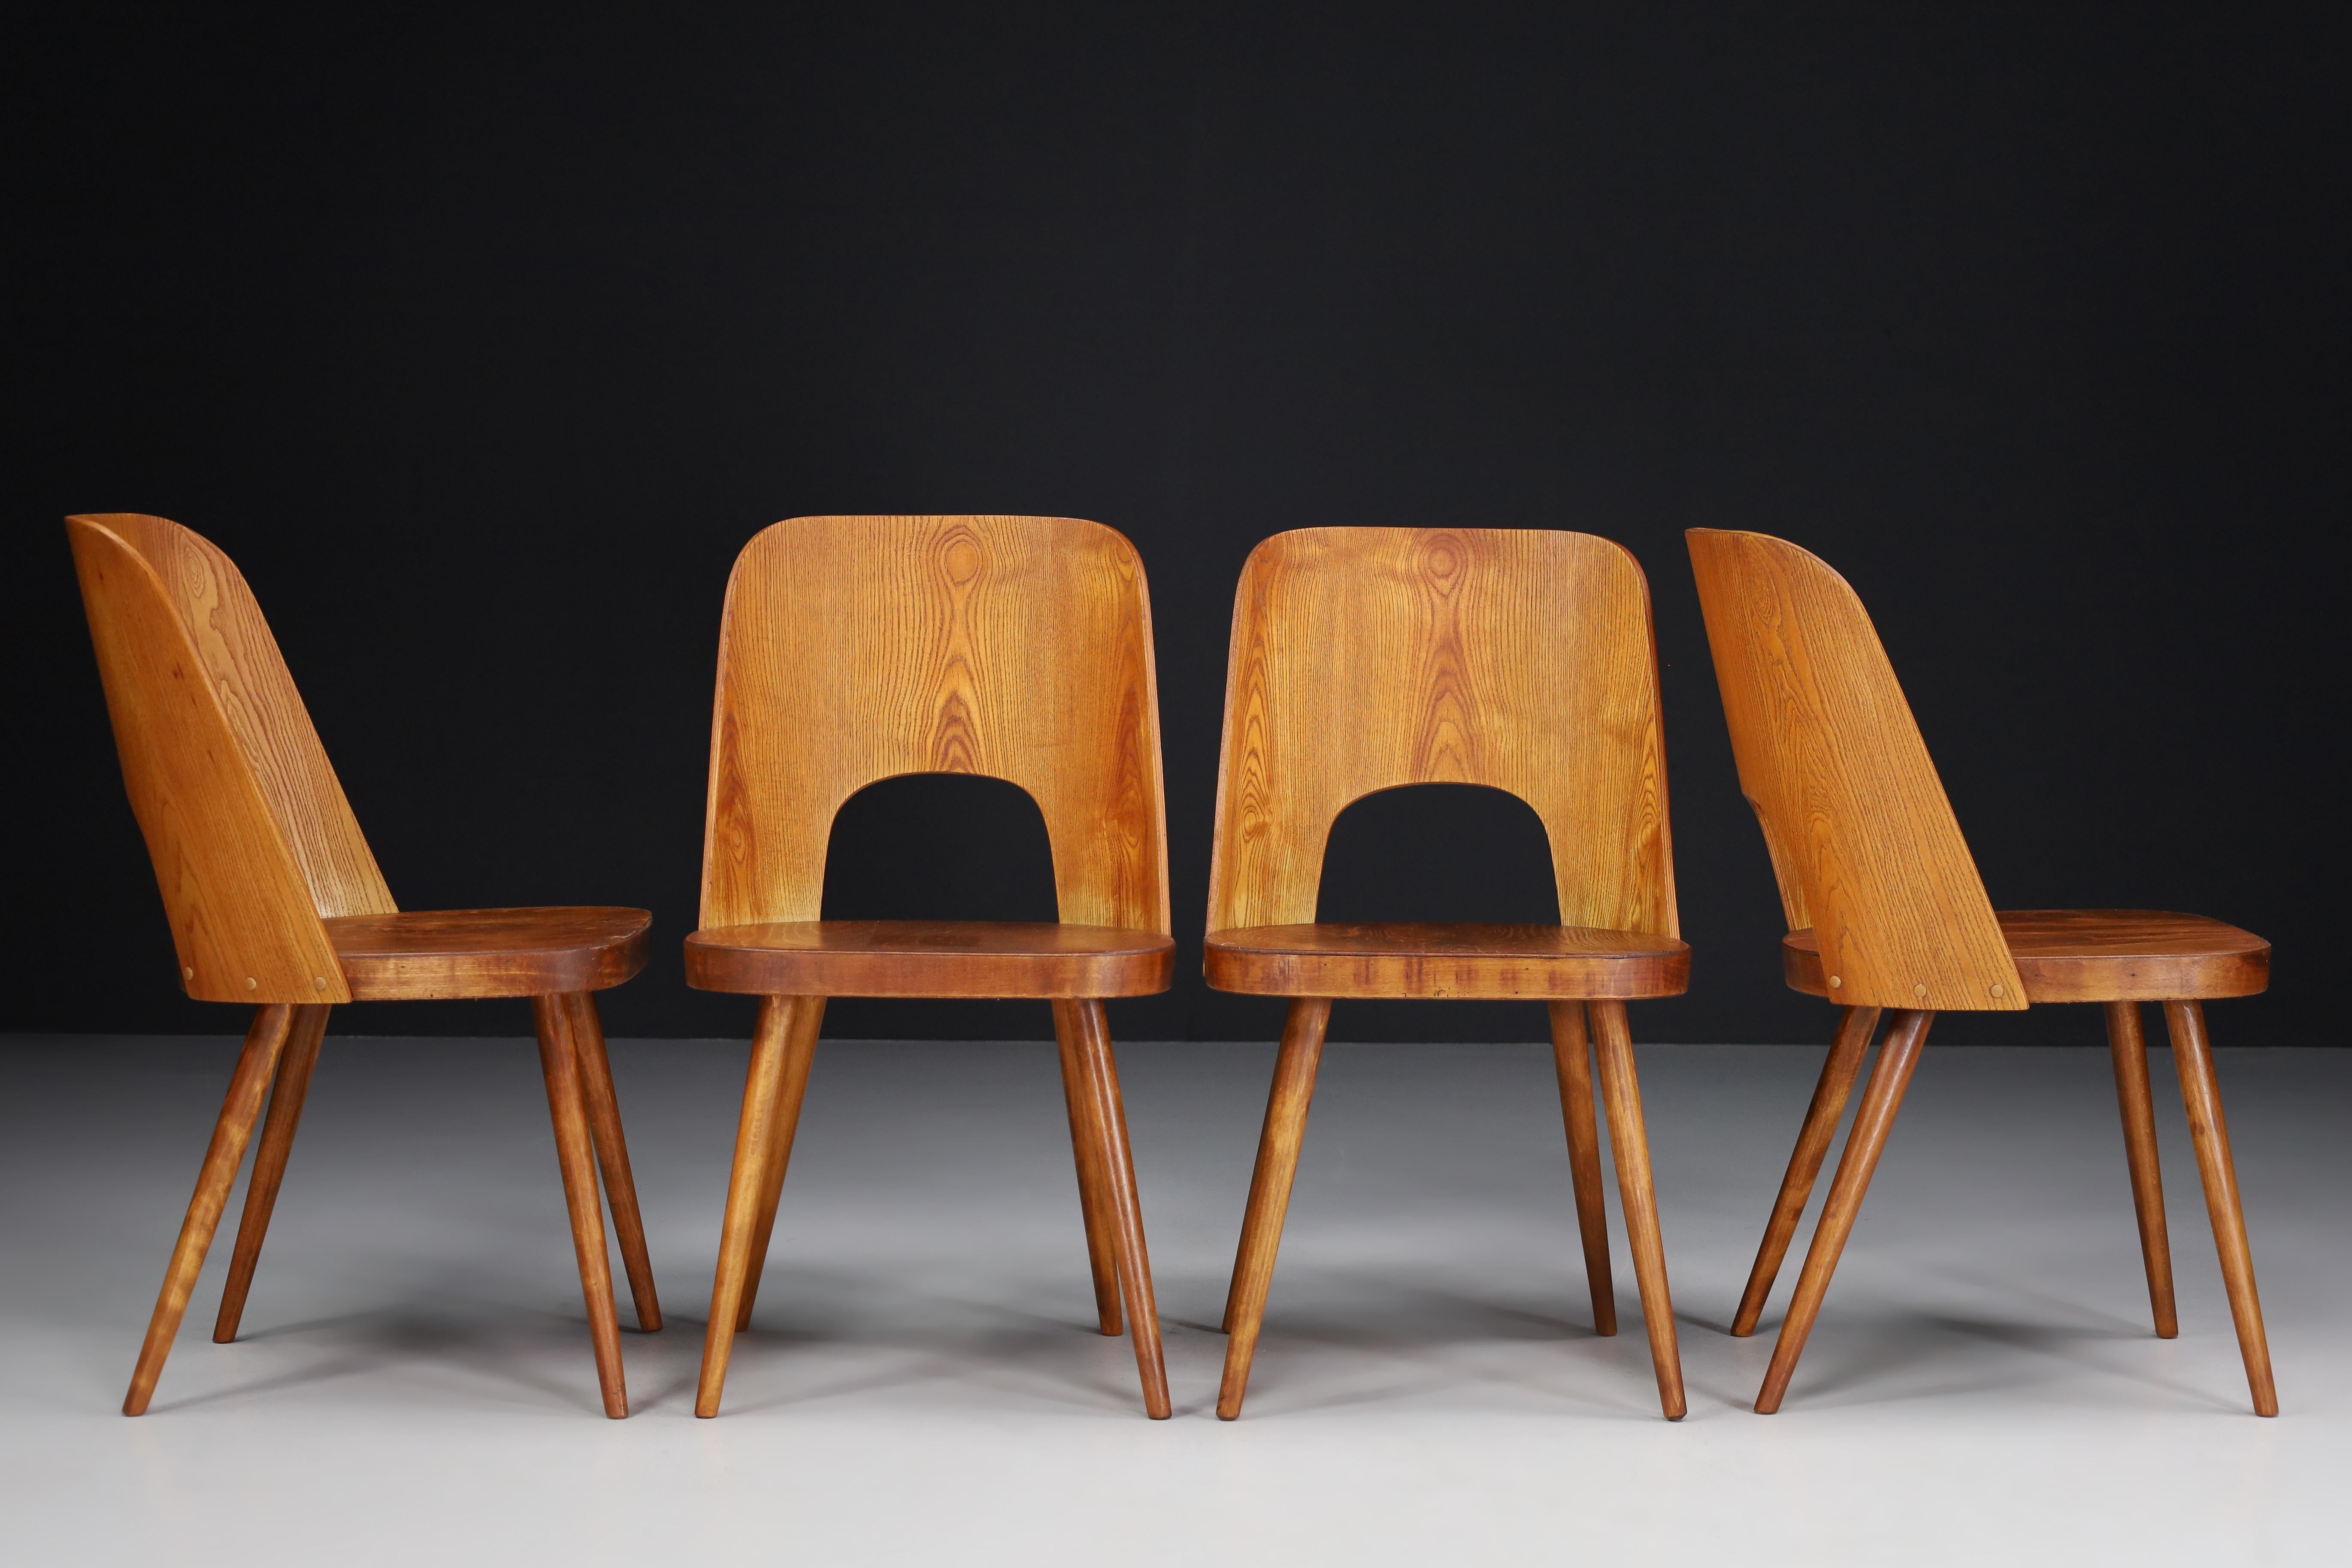 Ensemble de quatre chaises Oswald Haerdtl, années 1950 

Un ensemble rare de quatre chaises a été conçu par le designer autrichien Oswald Haerdtl et produit par Ton (Thonet) dans l'ancienne Tchécoslovaquie des années 1950. Chaises caractéristiques